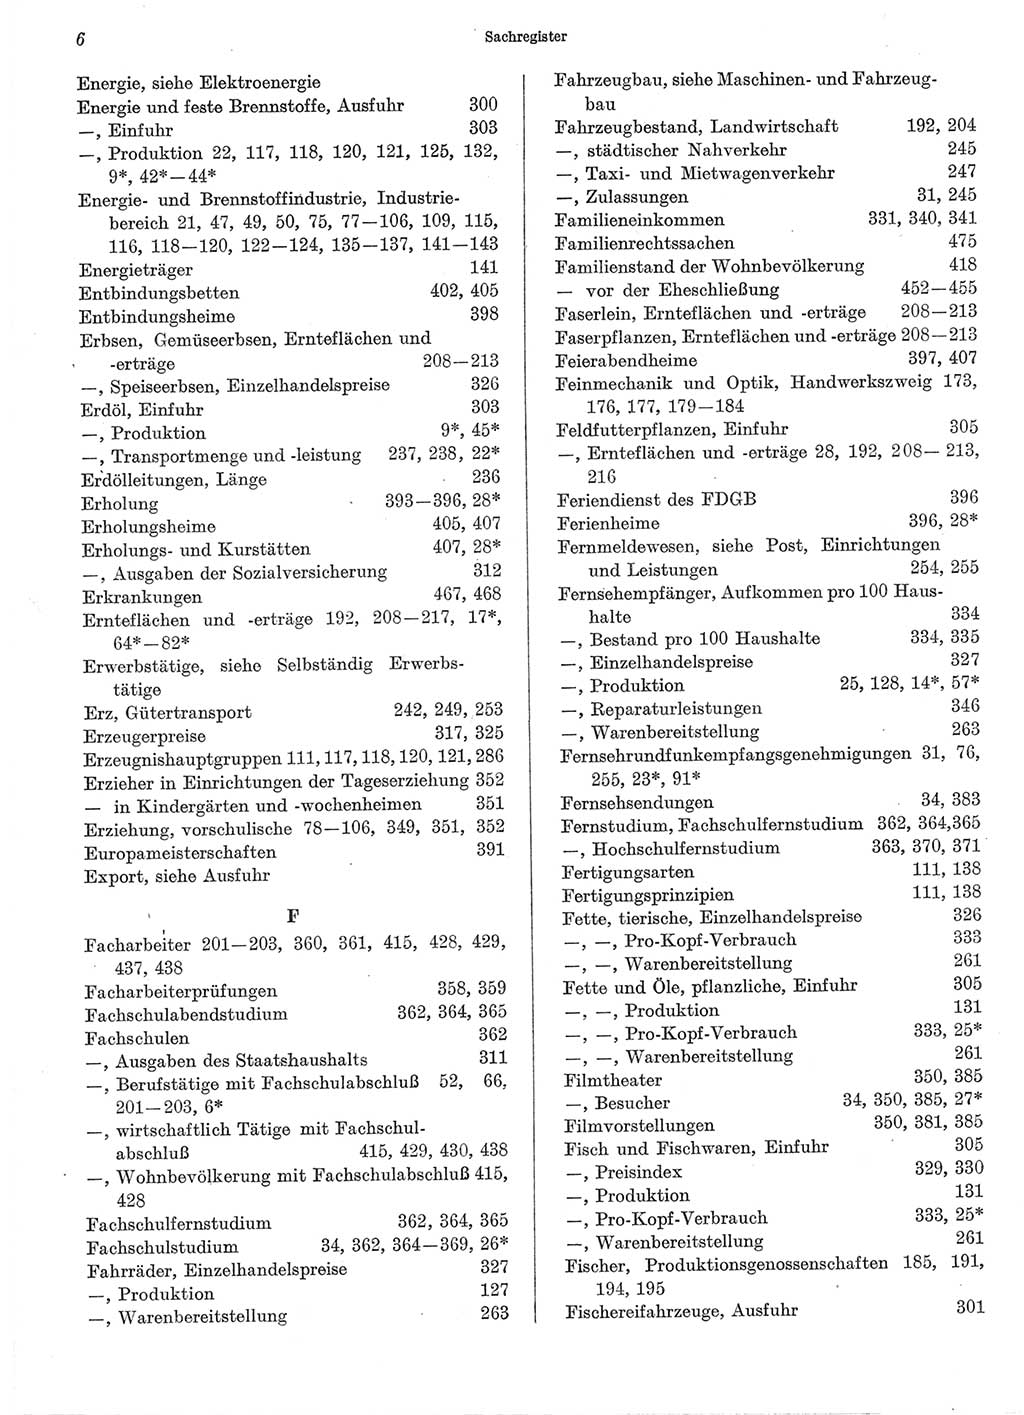 Statistisches Jahrbuch der Deutschen Demokratischen Republik (DDR) 1974, Seite 6 (Stat. Jb. DDR 1974, S. 6)